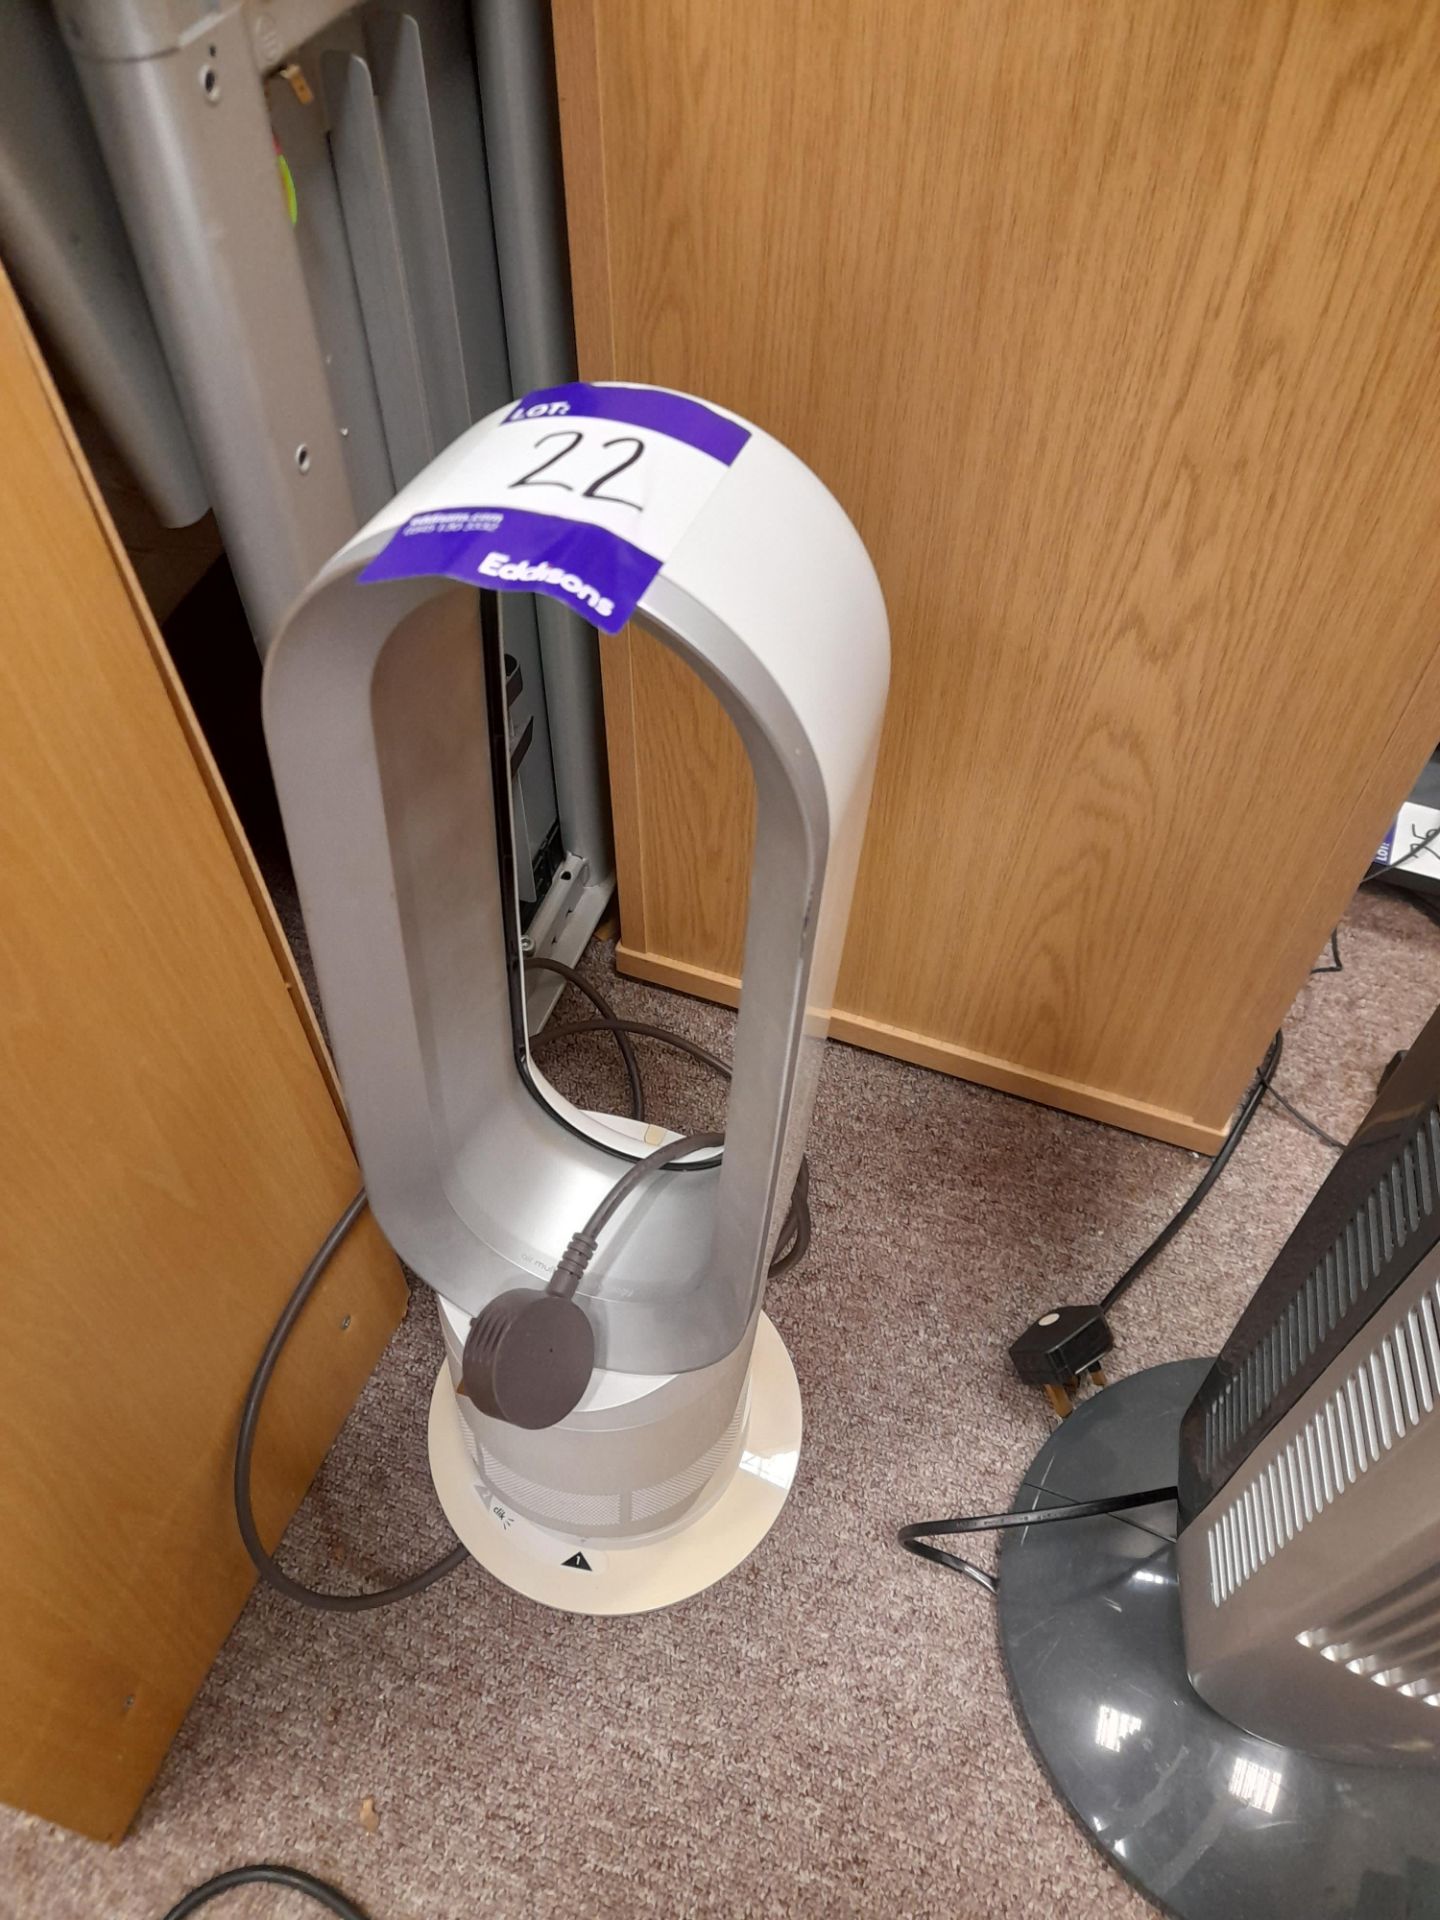 Dyson AM04 fan heater, and Prem-i-air tower fan